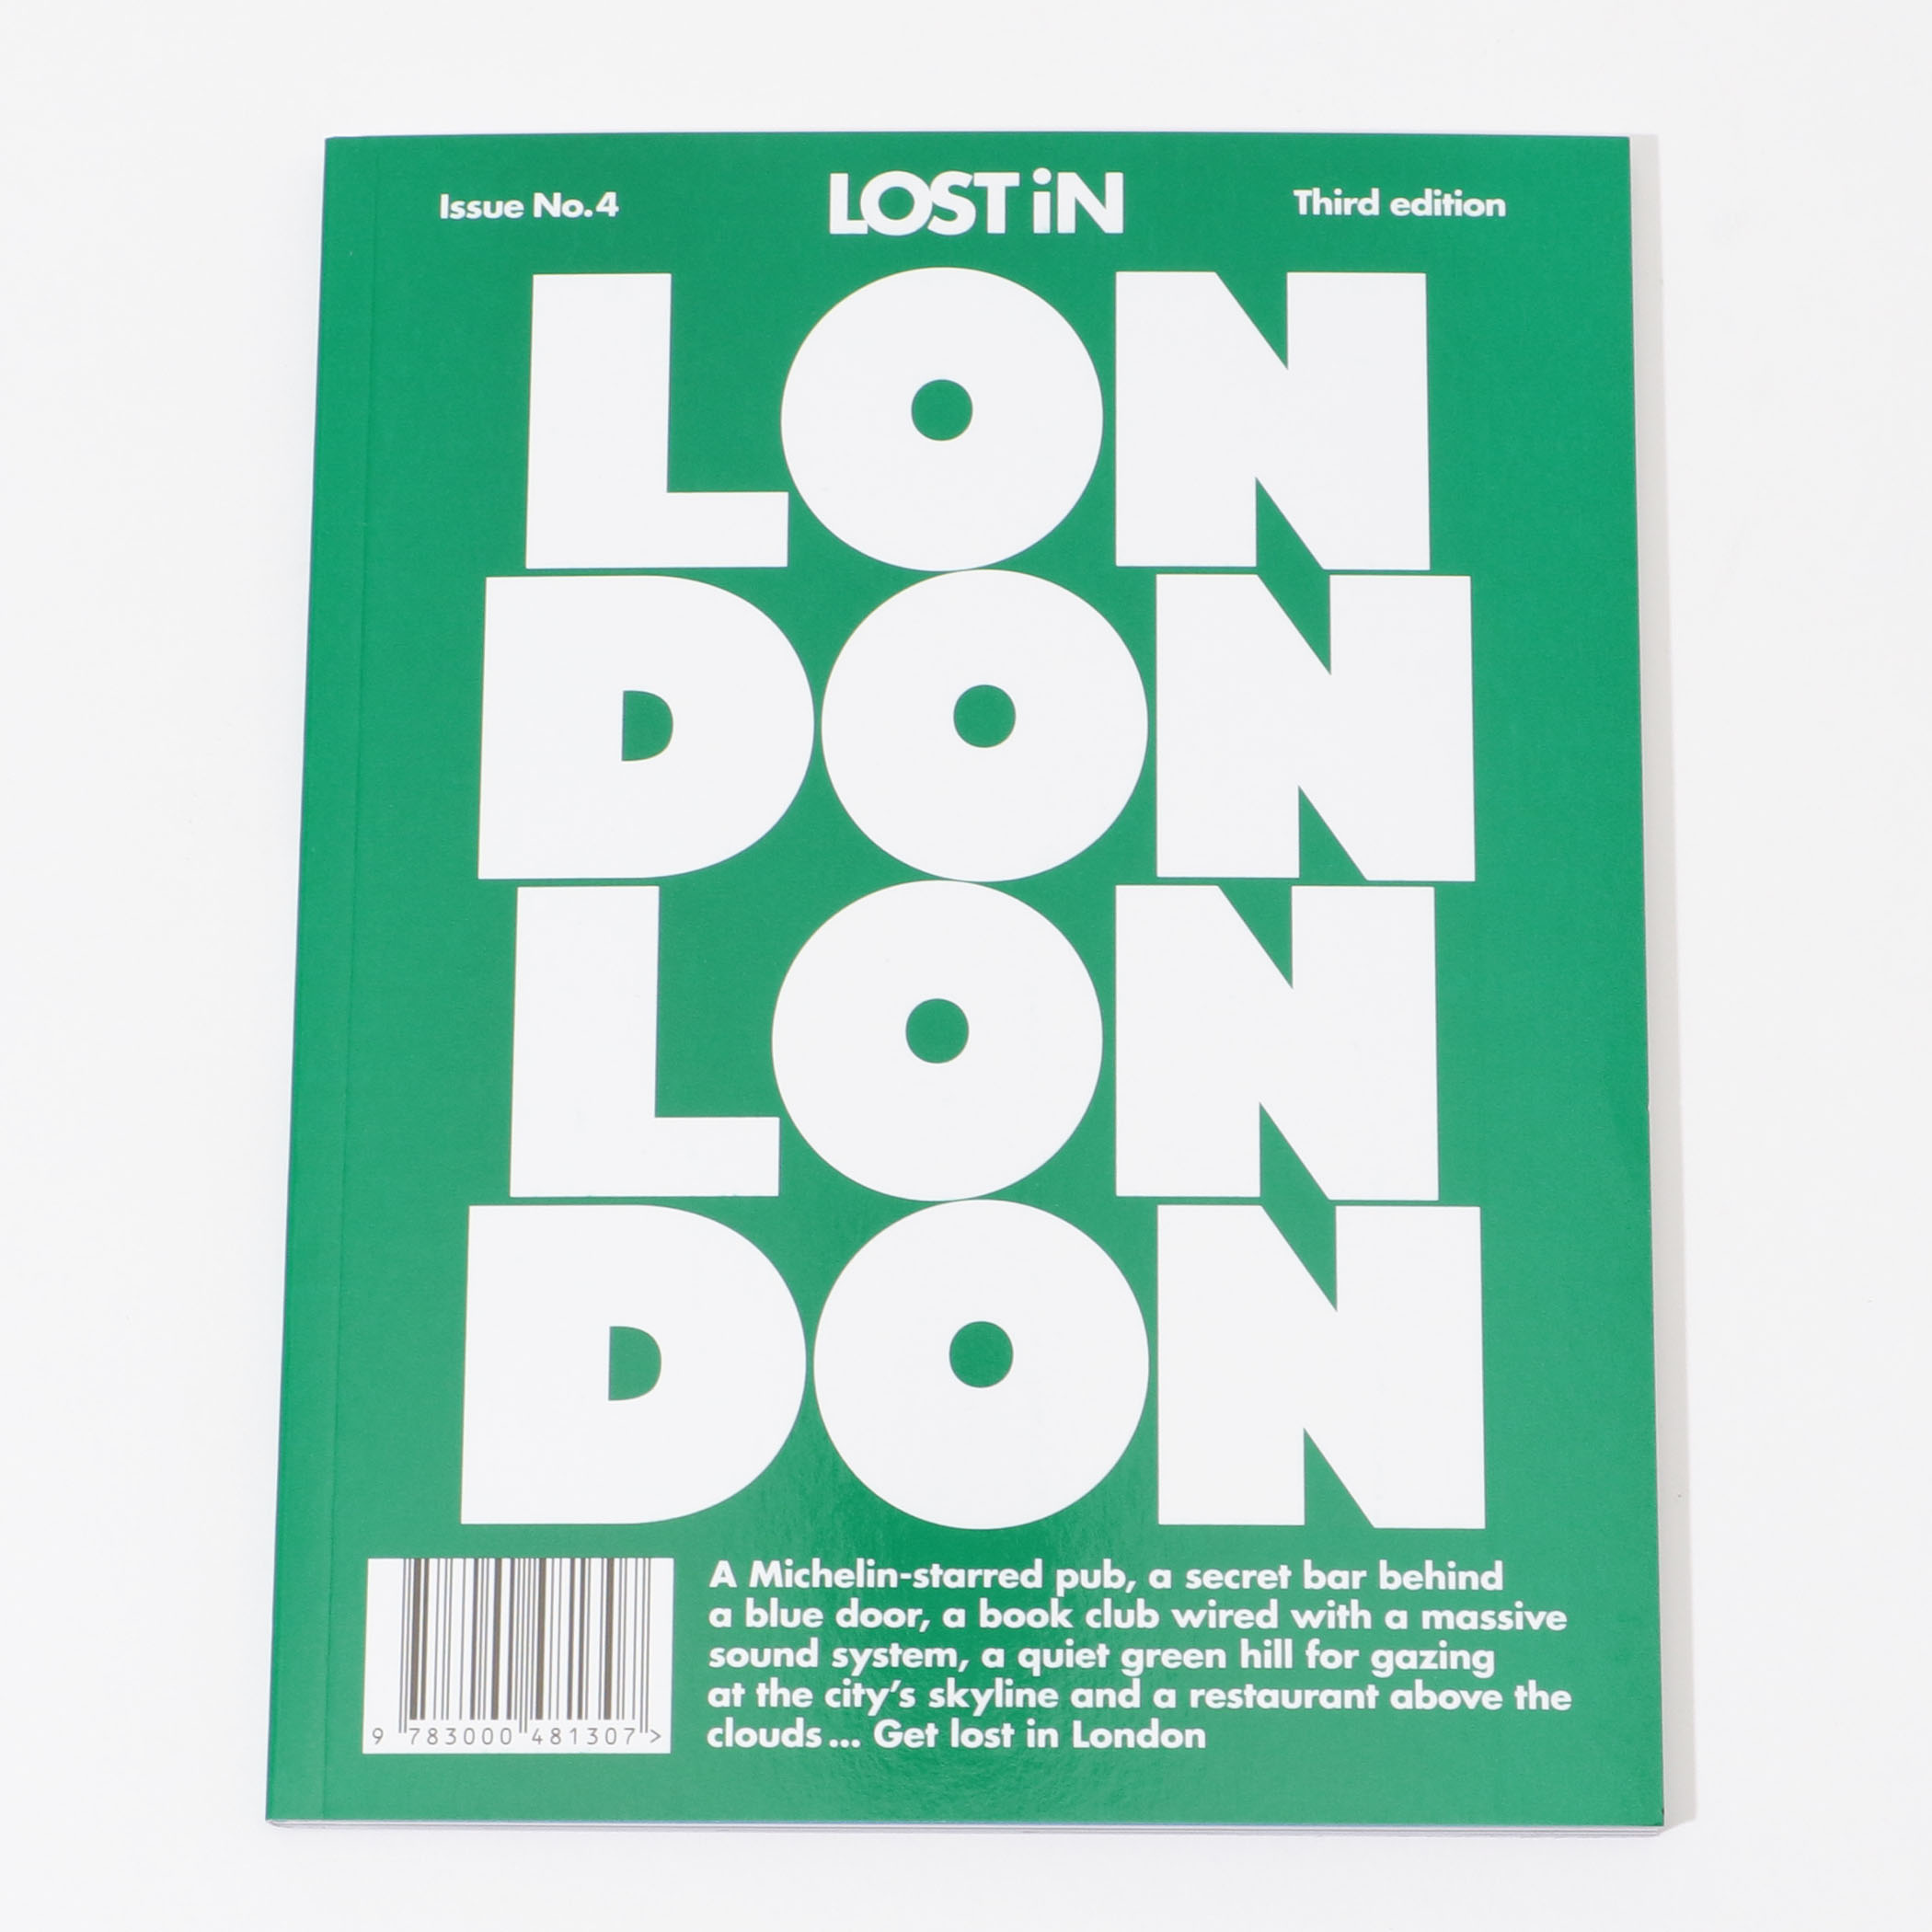 LOST IN London